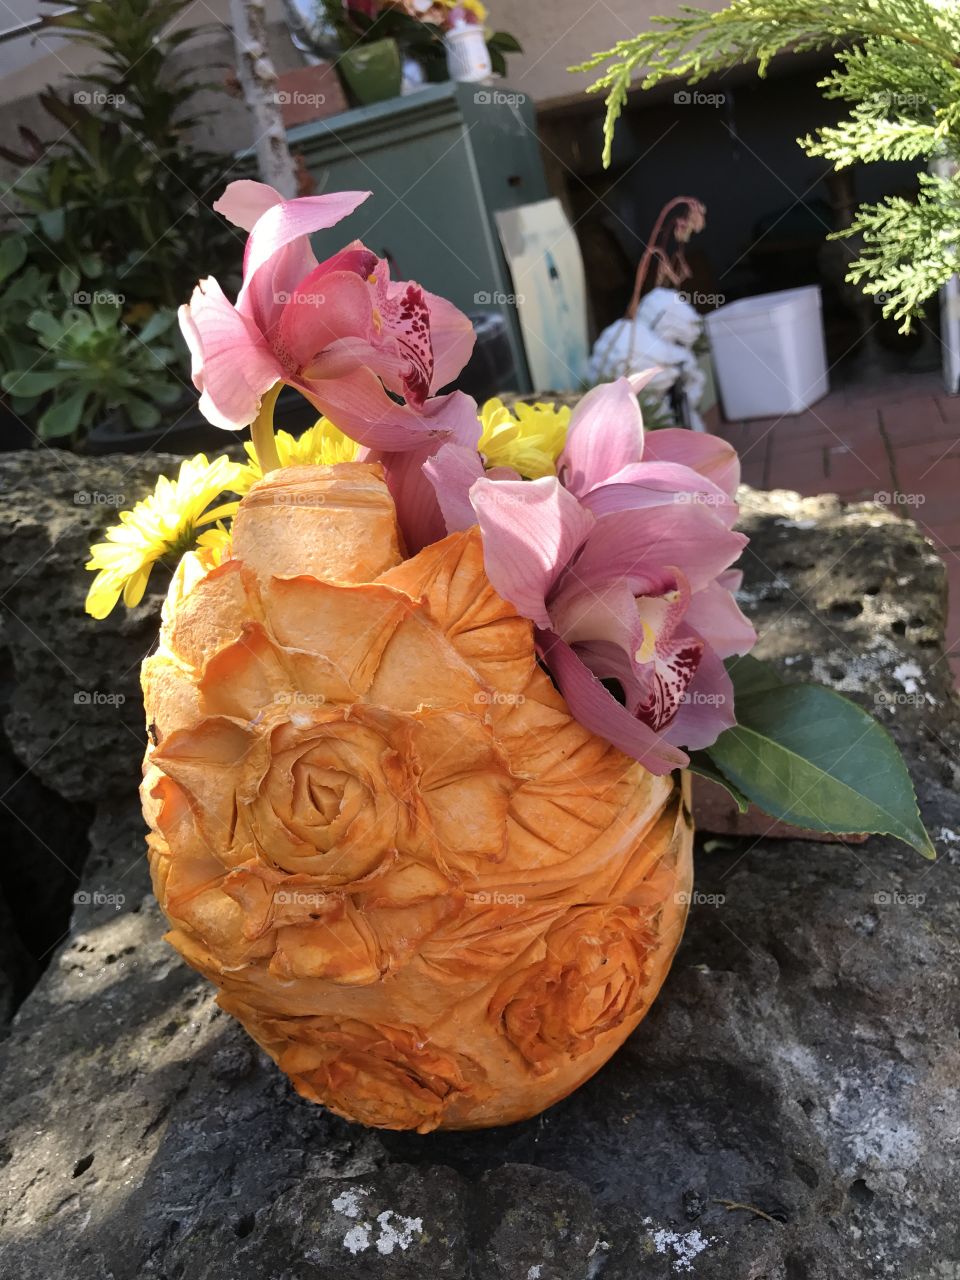 Pumpkin decoration as a vase